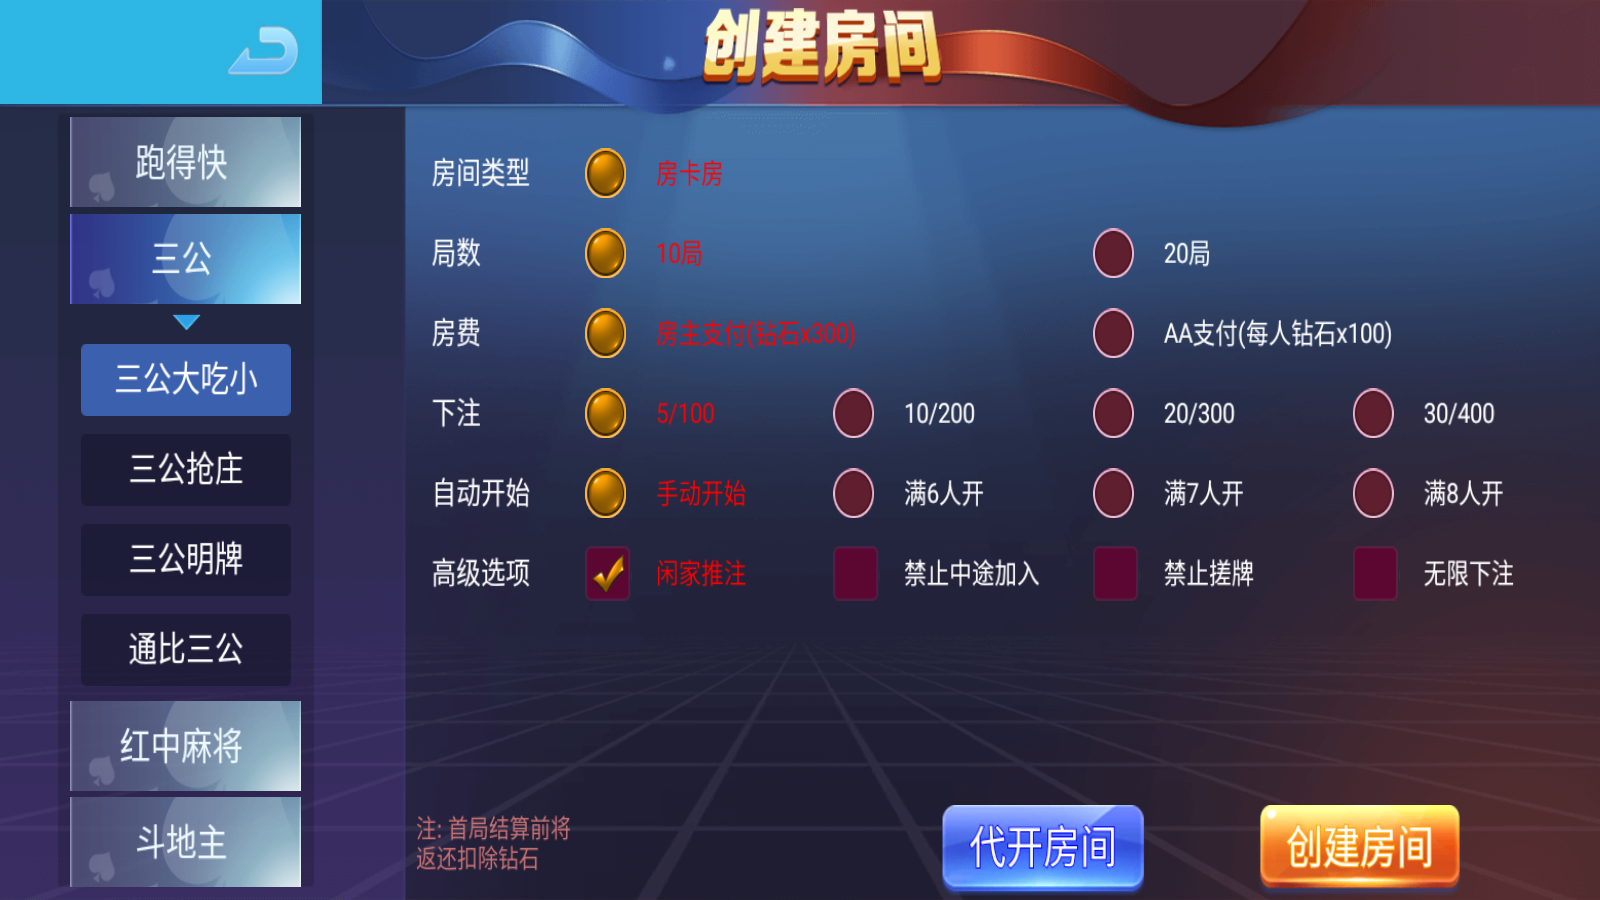 新版五游大联盟运营版棋牌组件 UI美观大方插图3